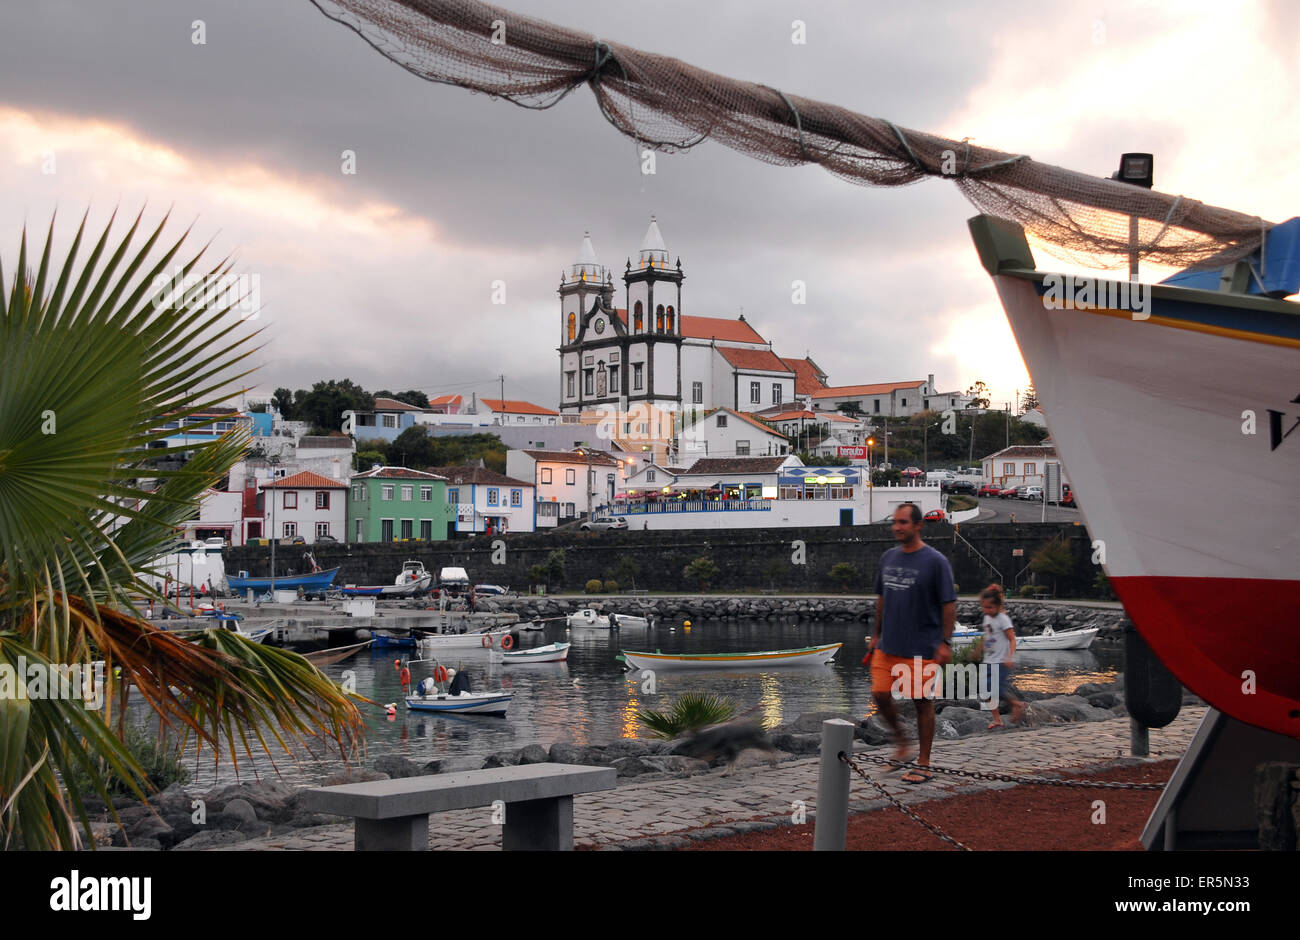 Dans le port de Sao Mateus près de Angra do Heroismo, île de Terceira, Açores, Portugal Banque D'Images